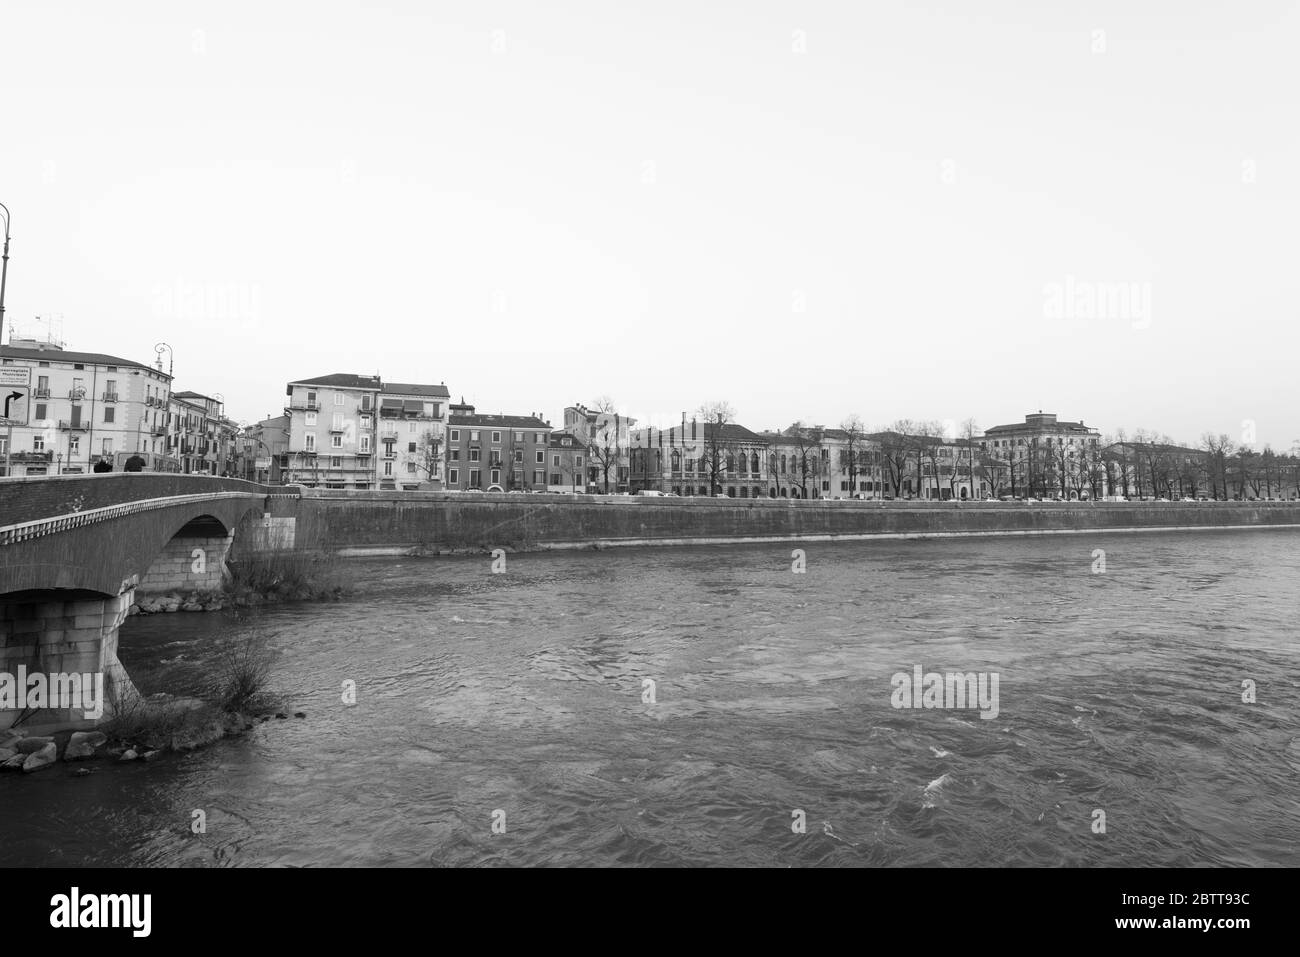 VERONA, ITALIA - 14, MARZO de 2018: Imagen en blanco y negro de gran vista del río Adige y edificios ubicados en Verona, Italia Foto de stock